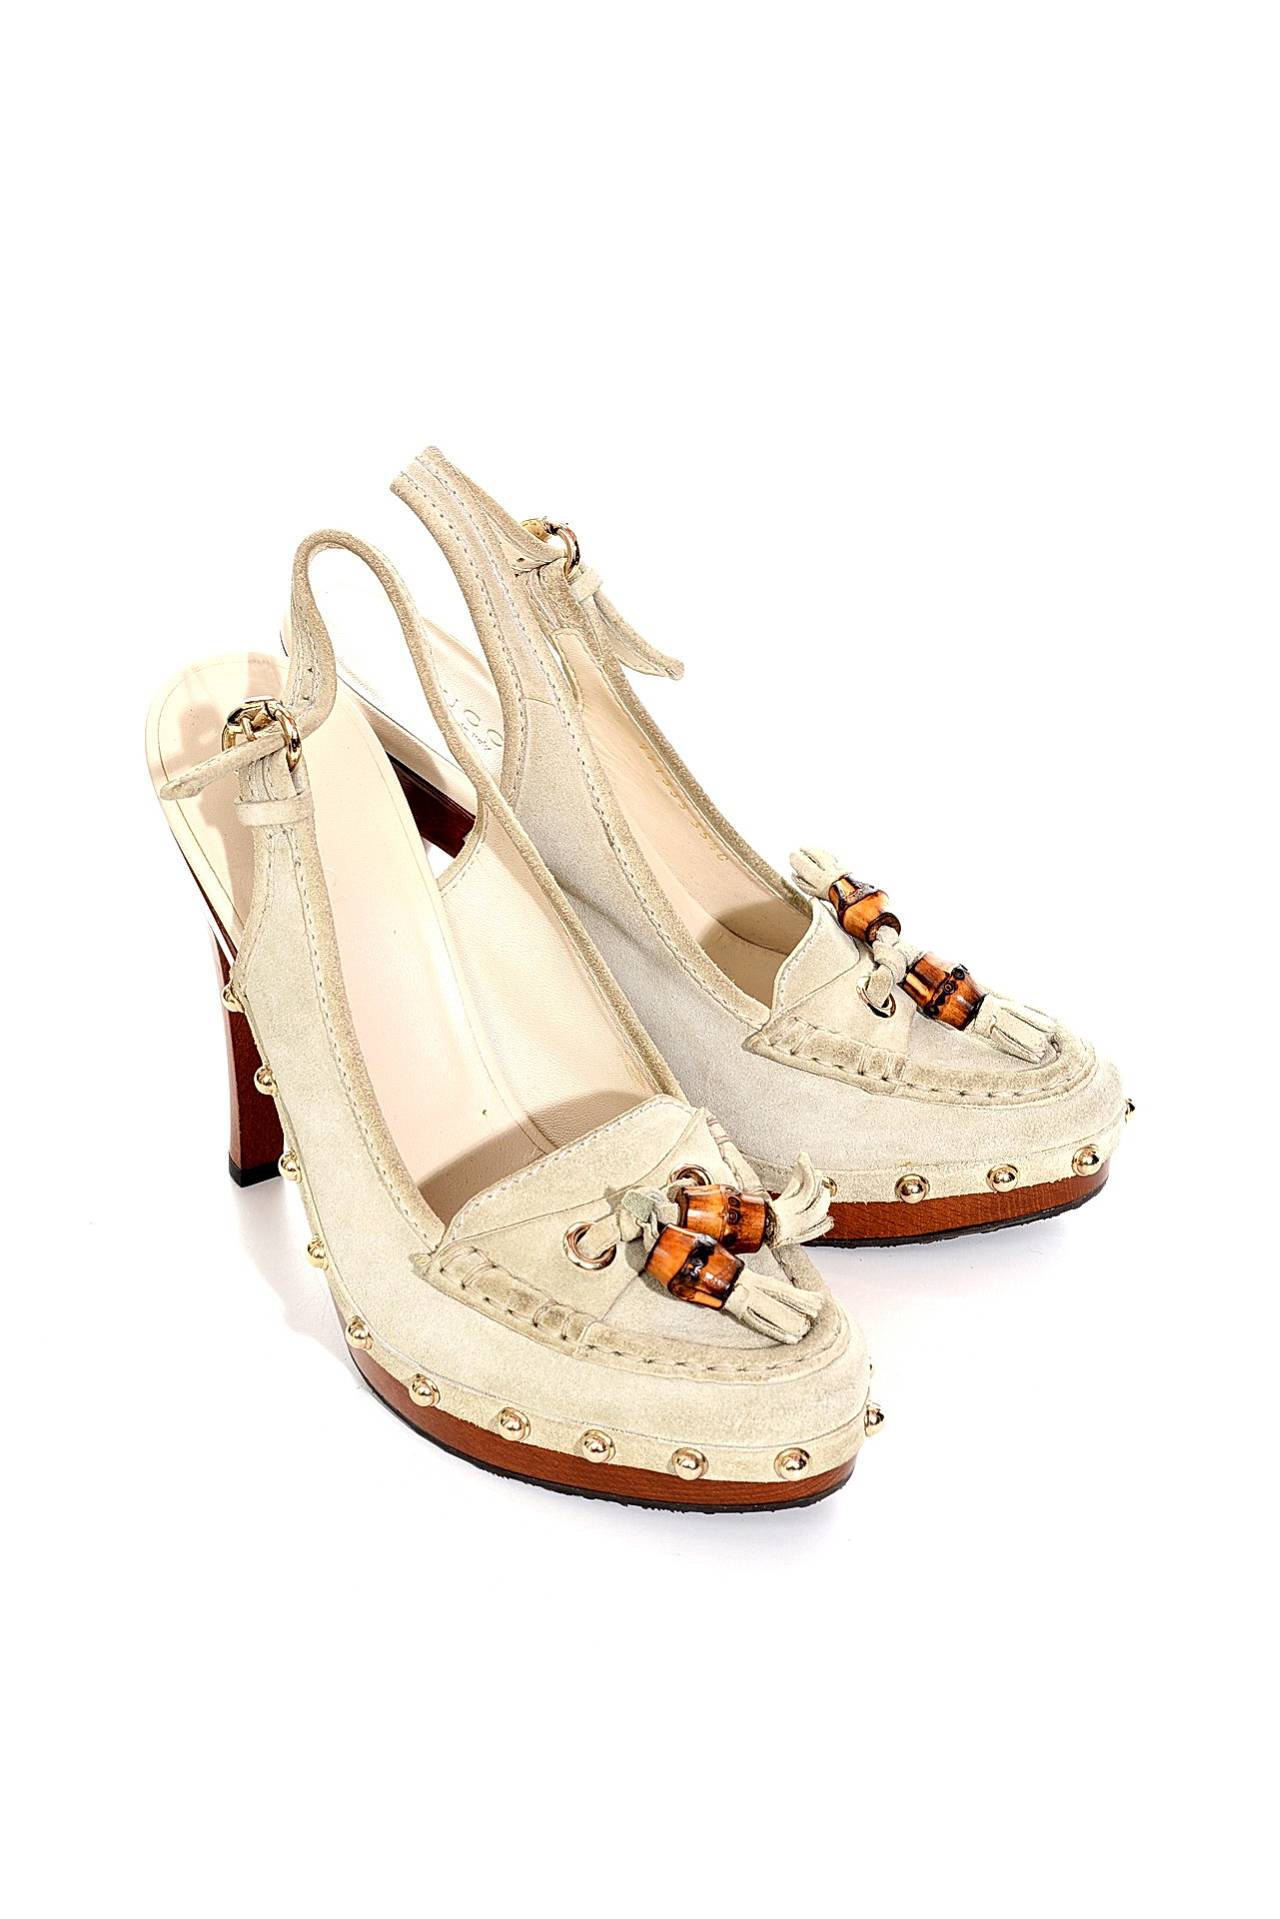 Обувь женская Босоножки GUCCI (16/02/17). Купить за 11970 руб.